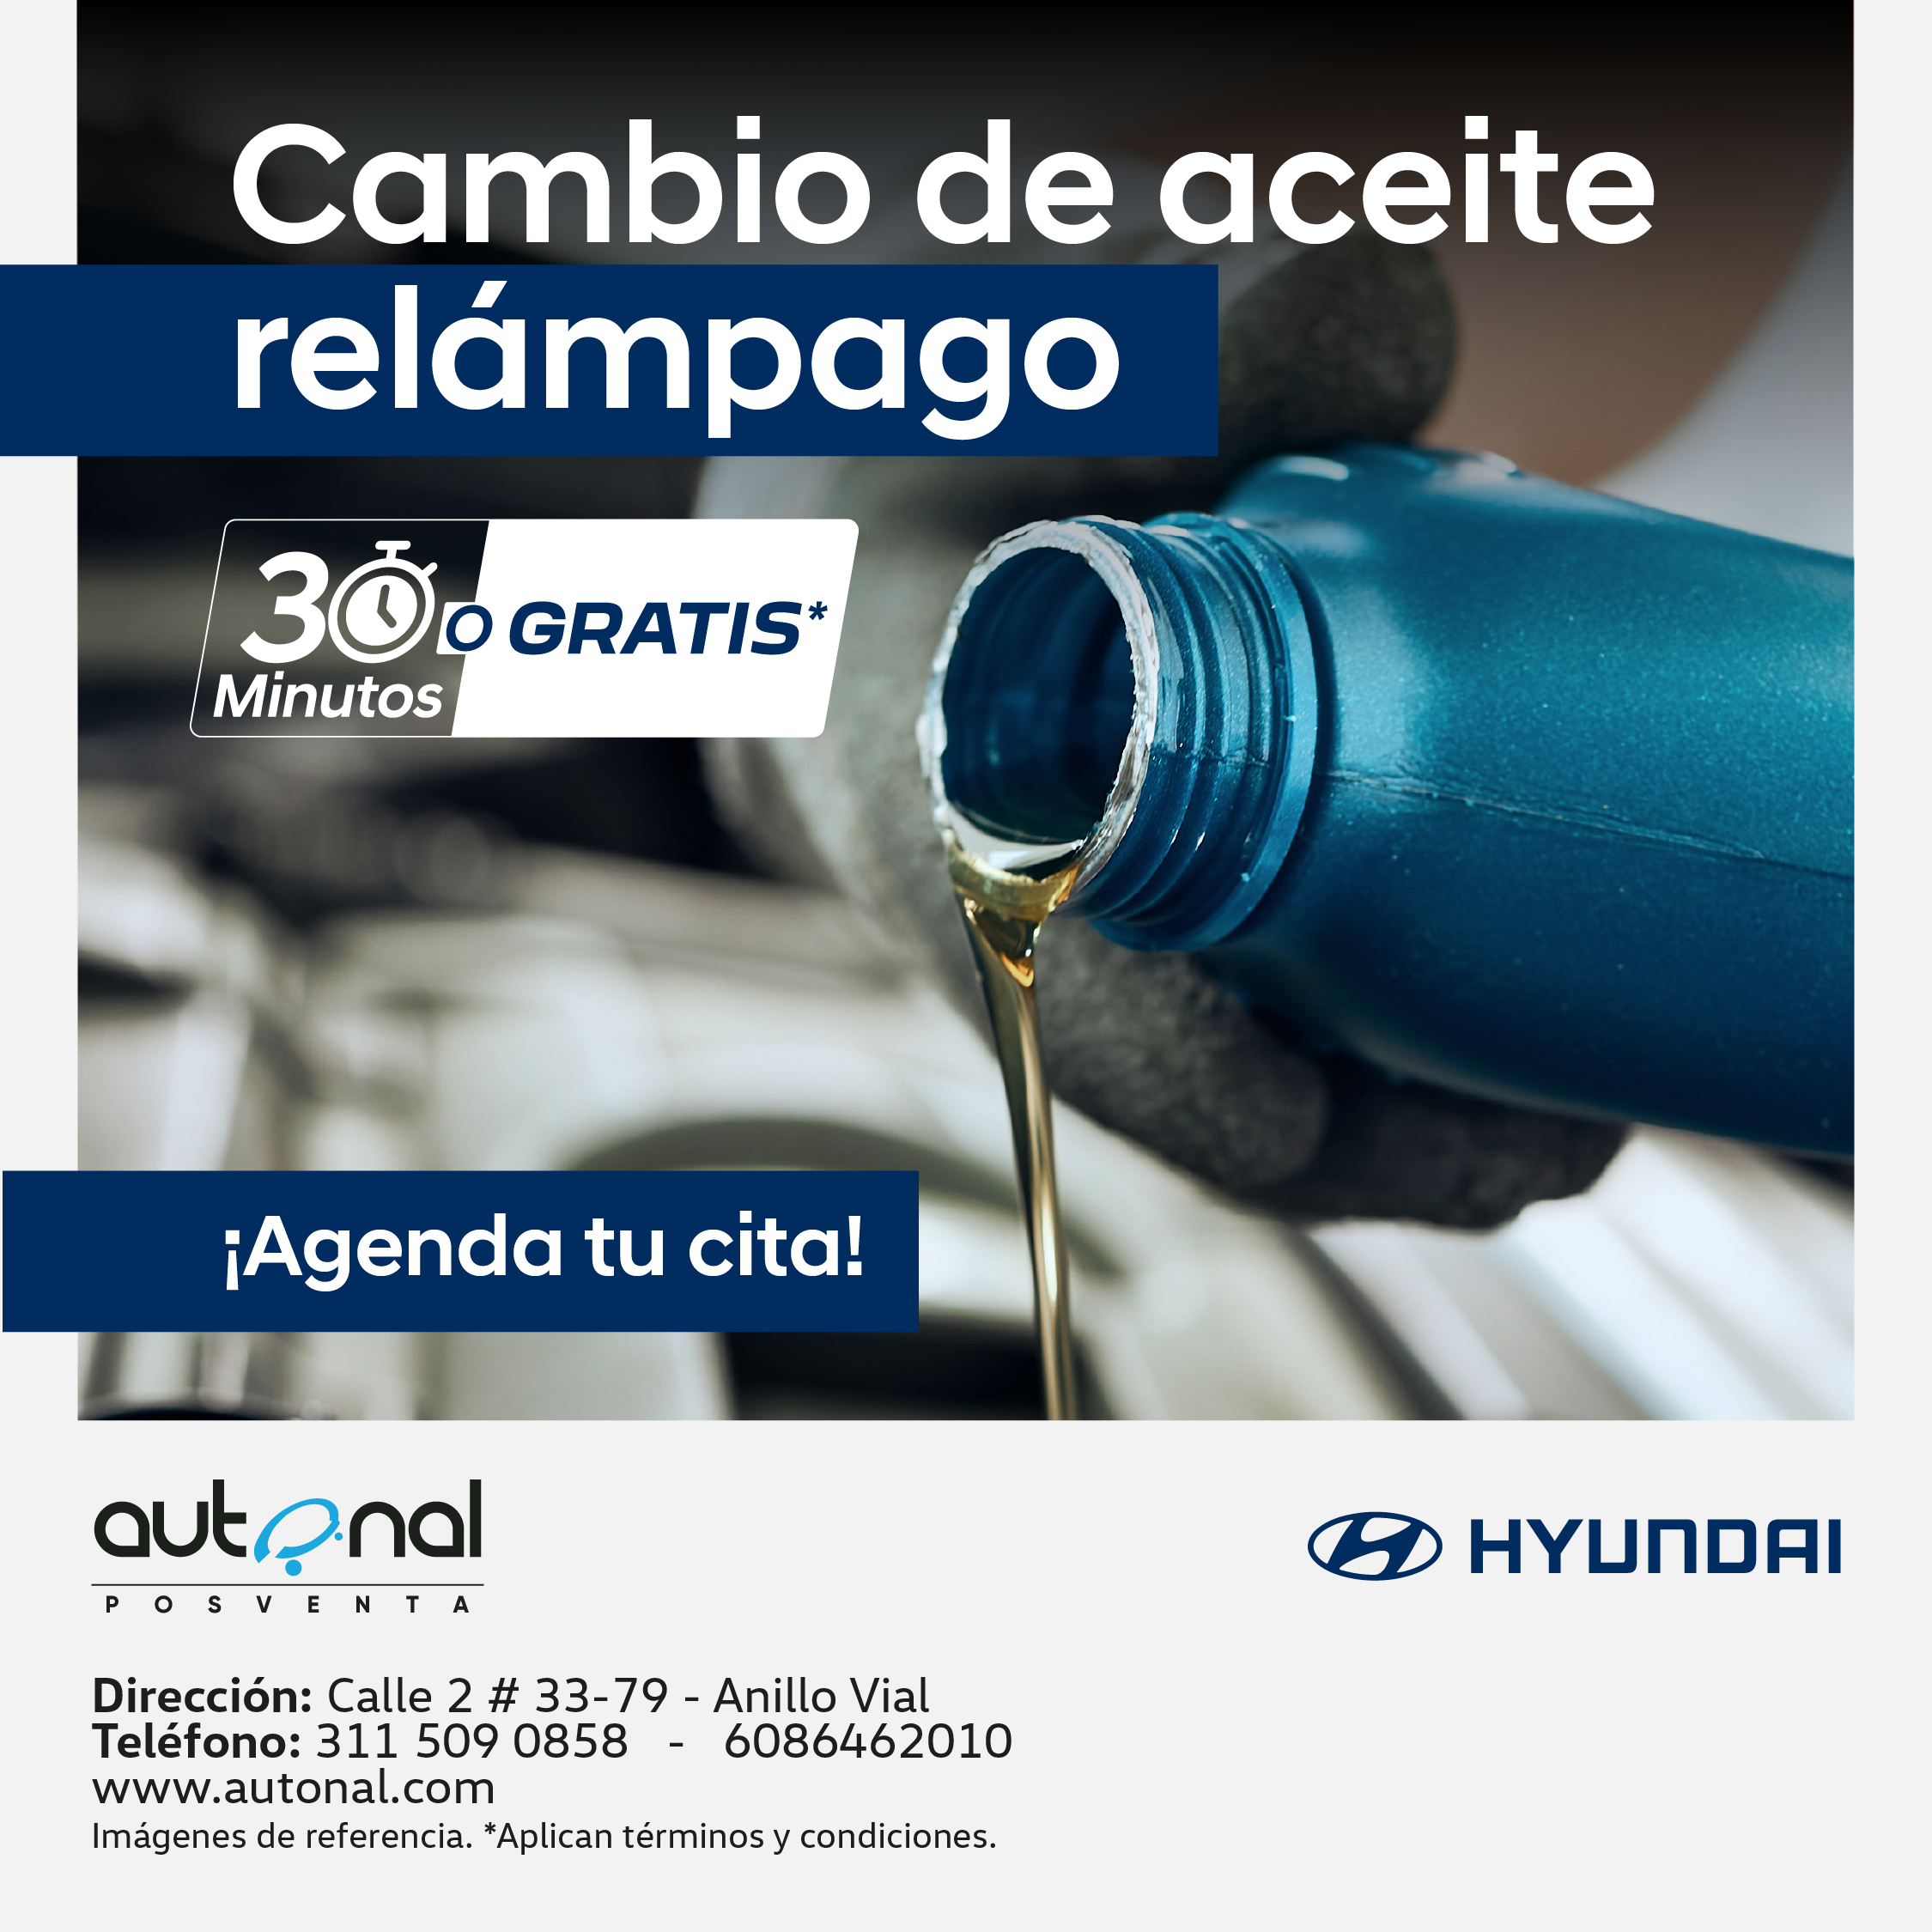 Cambio Aceite Hyundai Villavicencio